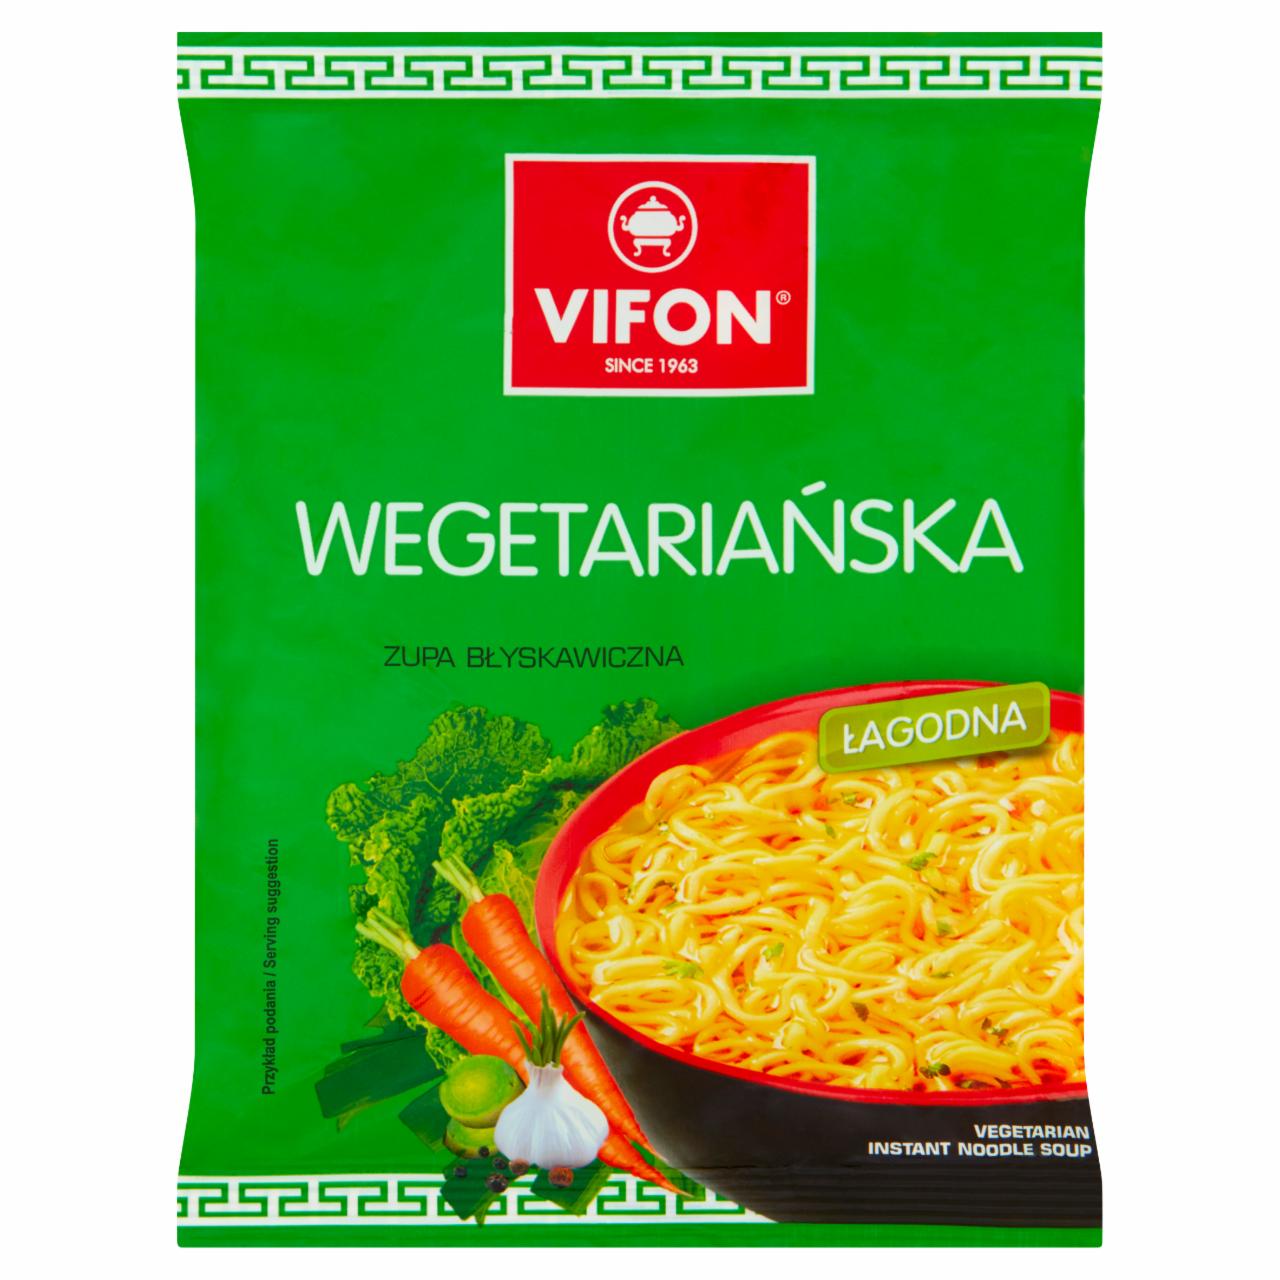 Zdjęcia - Zupa błyskawiczna wegetariańska 70 g Vifon